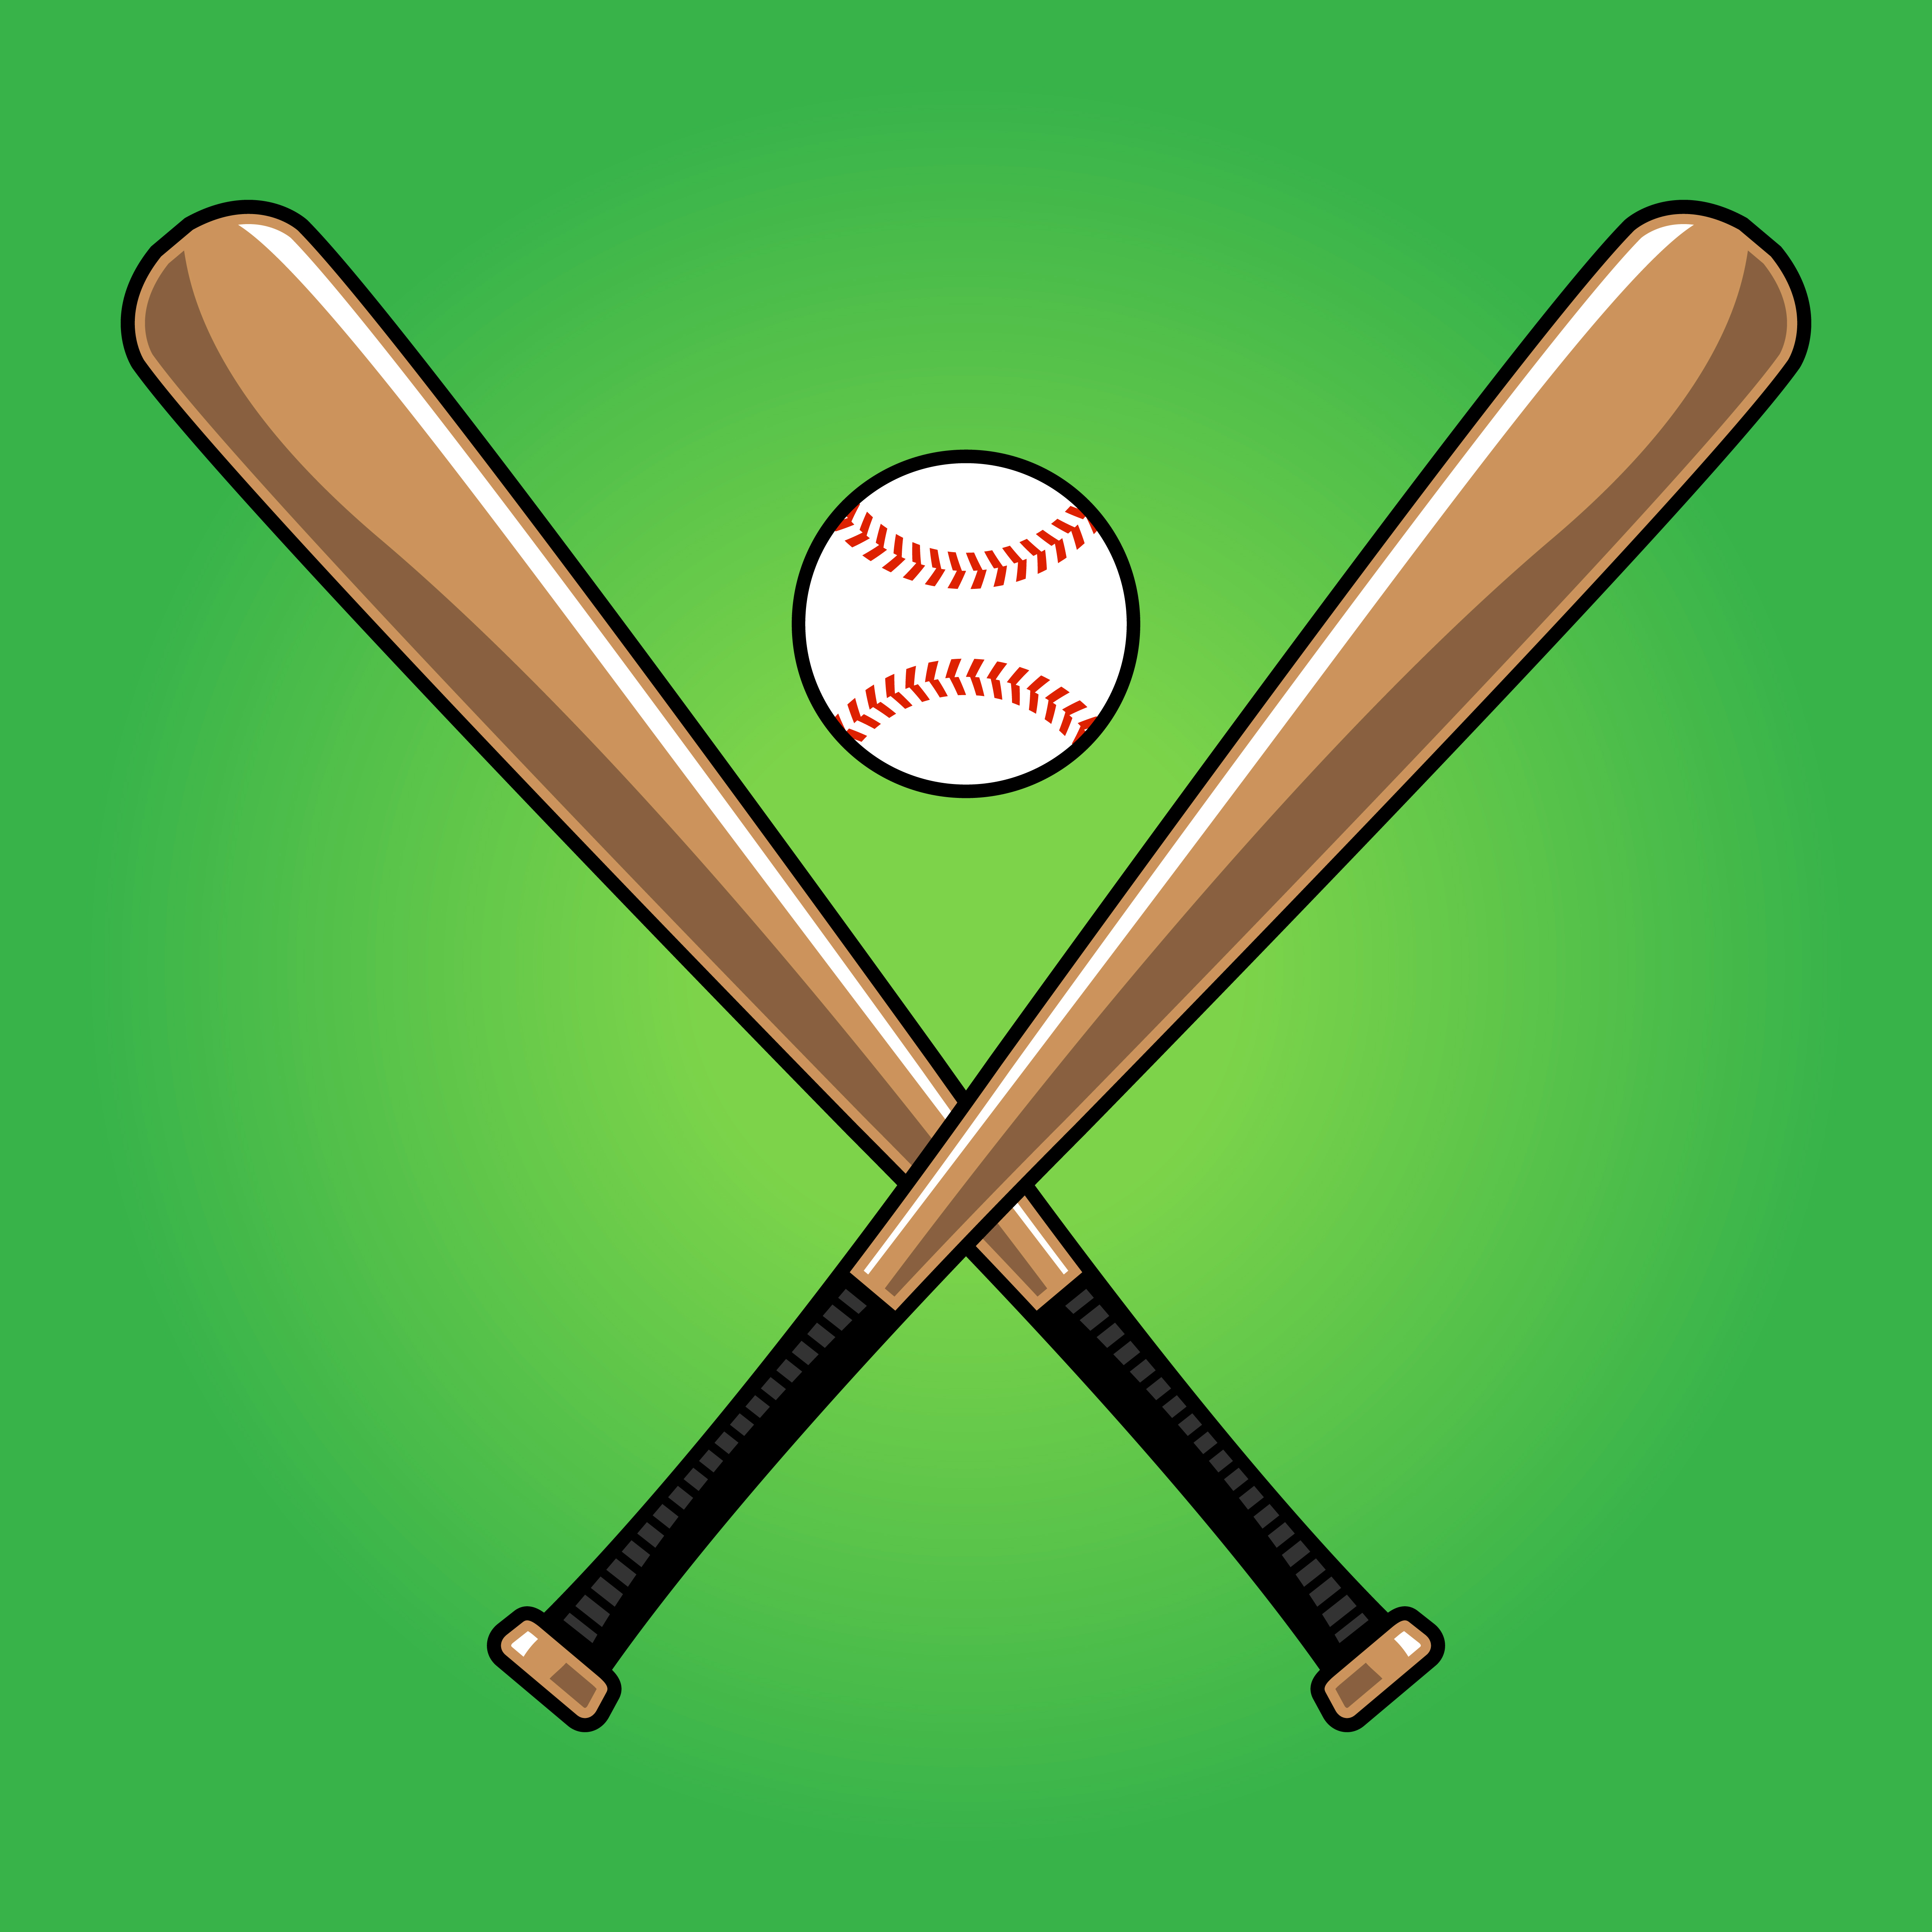 Download Baseball Bat - Download Free Vectors, Clipart Graphics & Vector Art